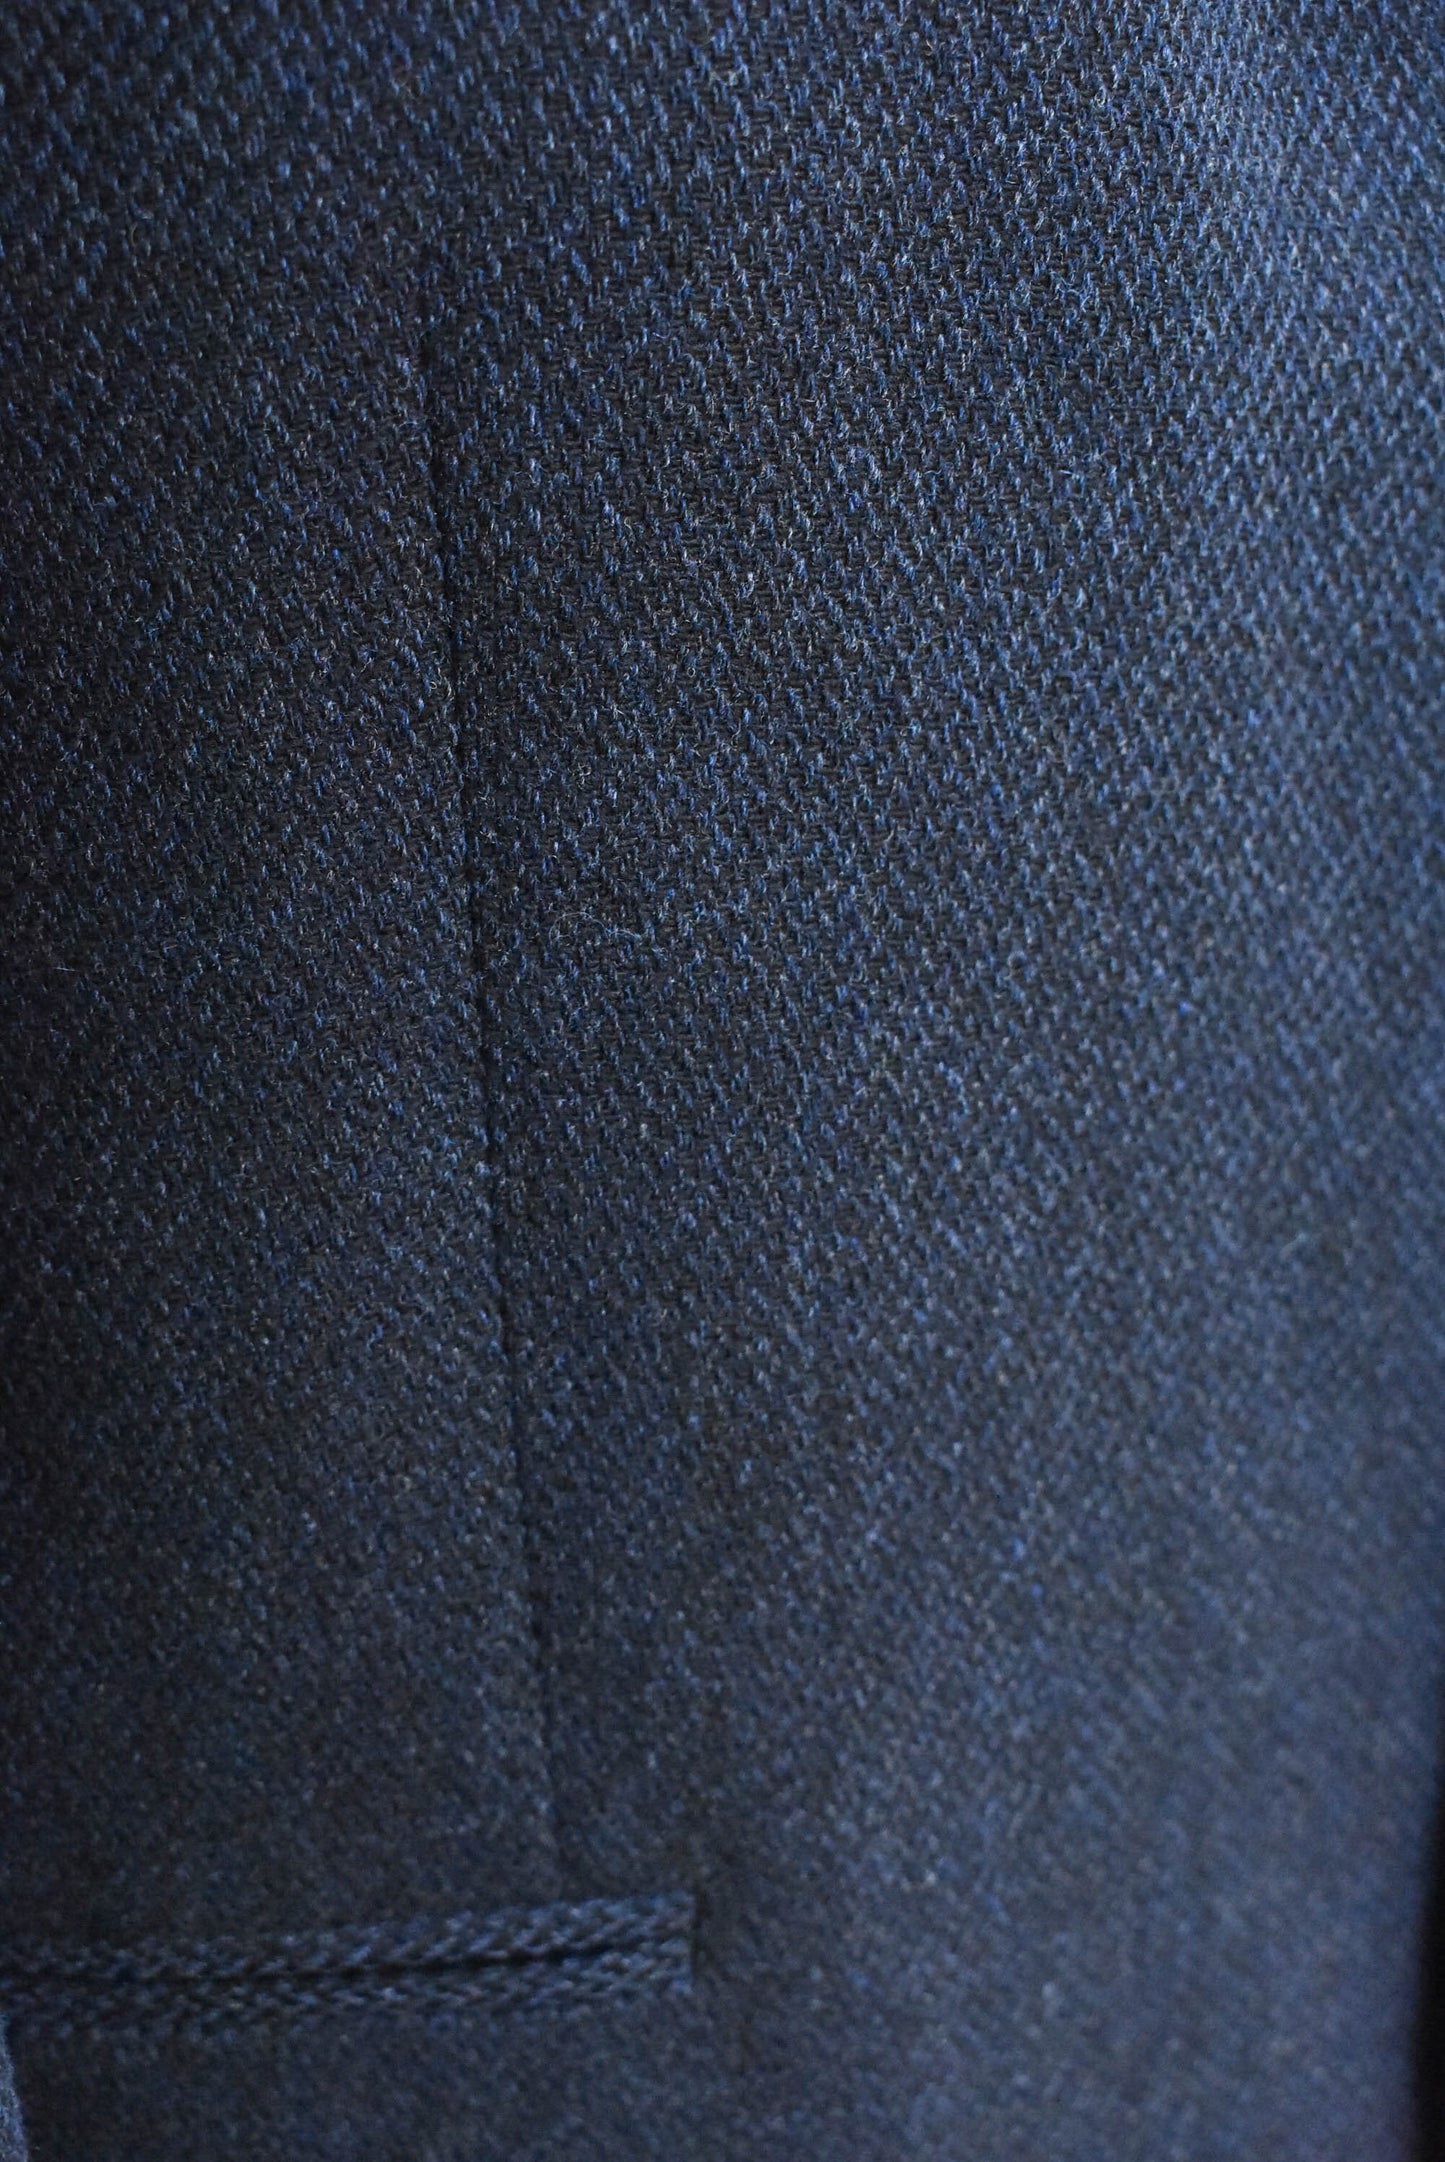 Orsini Uomo wool suit jacket, size 108R